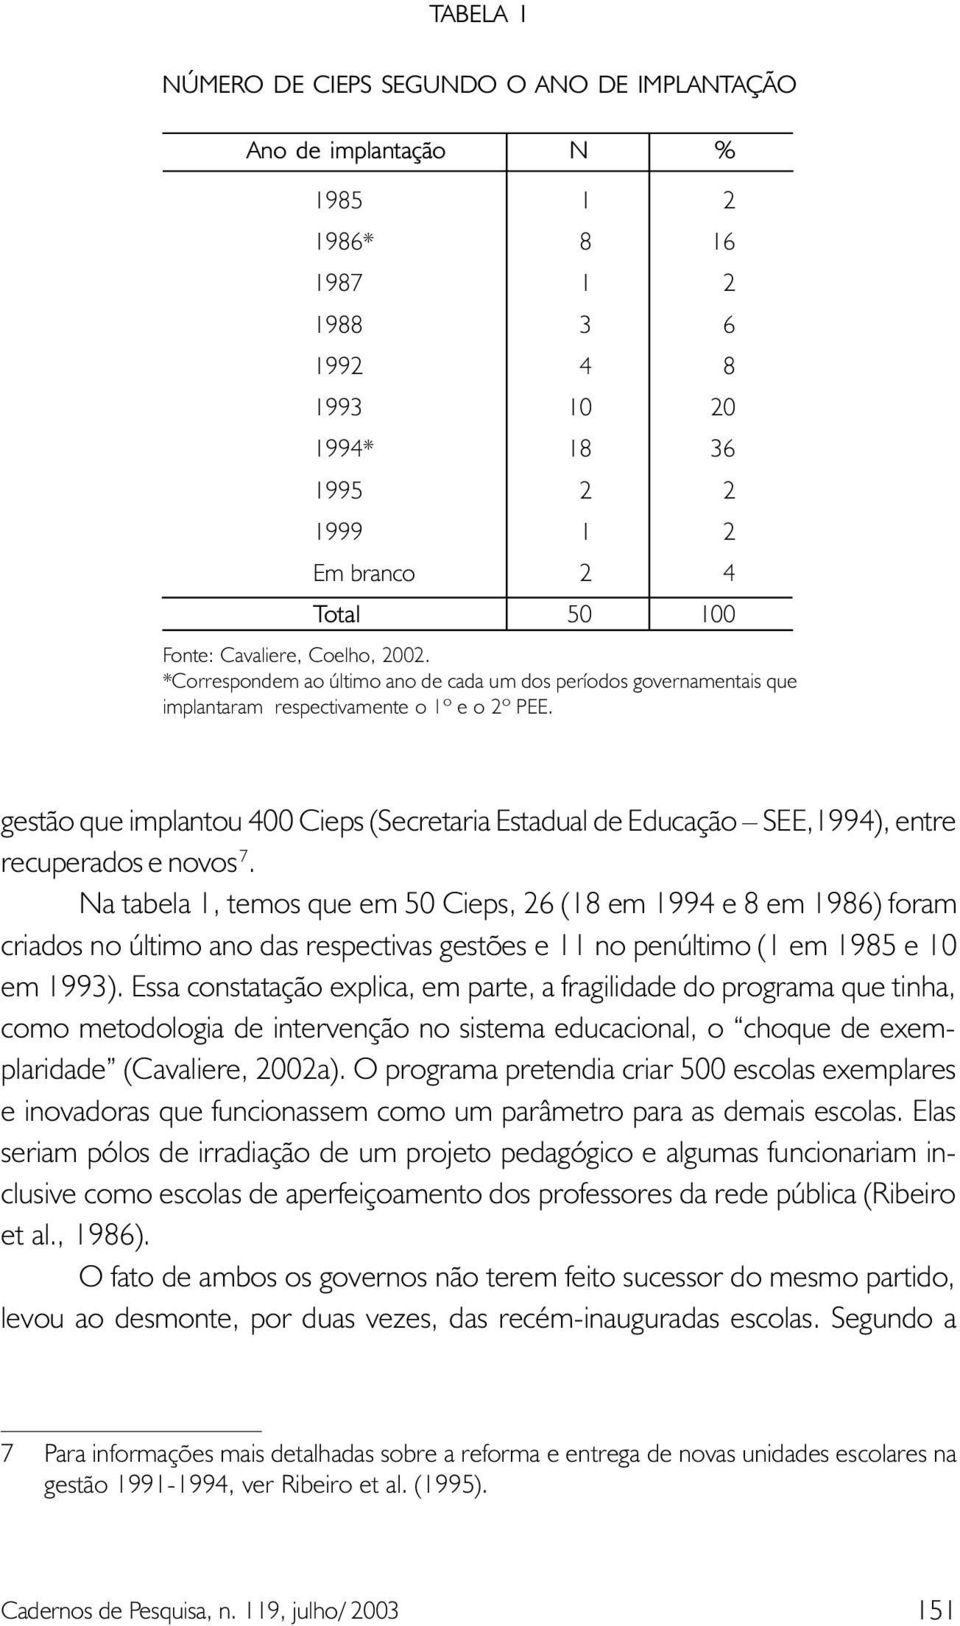 gestão que implantou 400 Cieps (Secretaria Estadual de Educação SEE,1994), entre recuperados e novos 7.